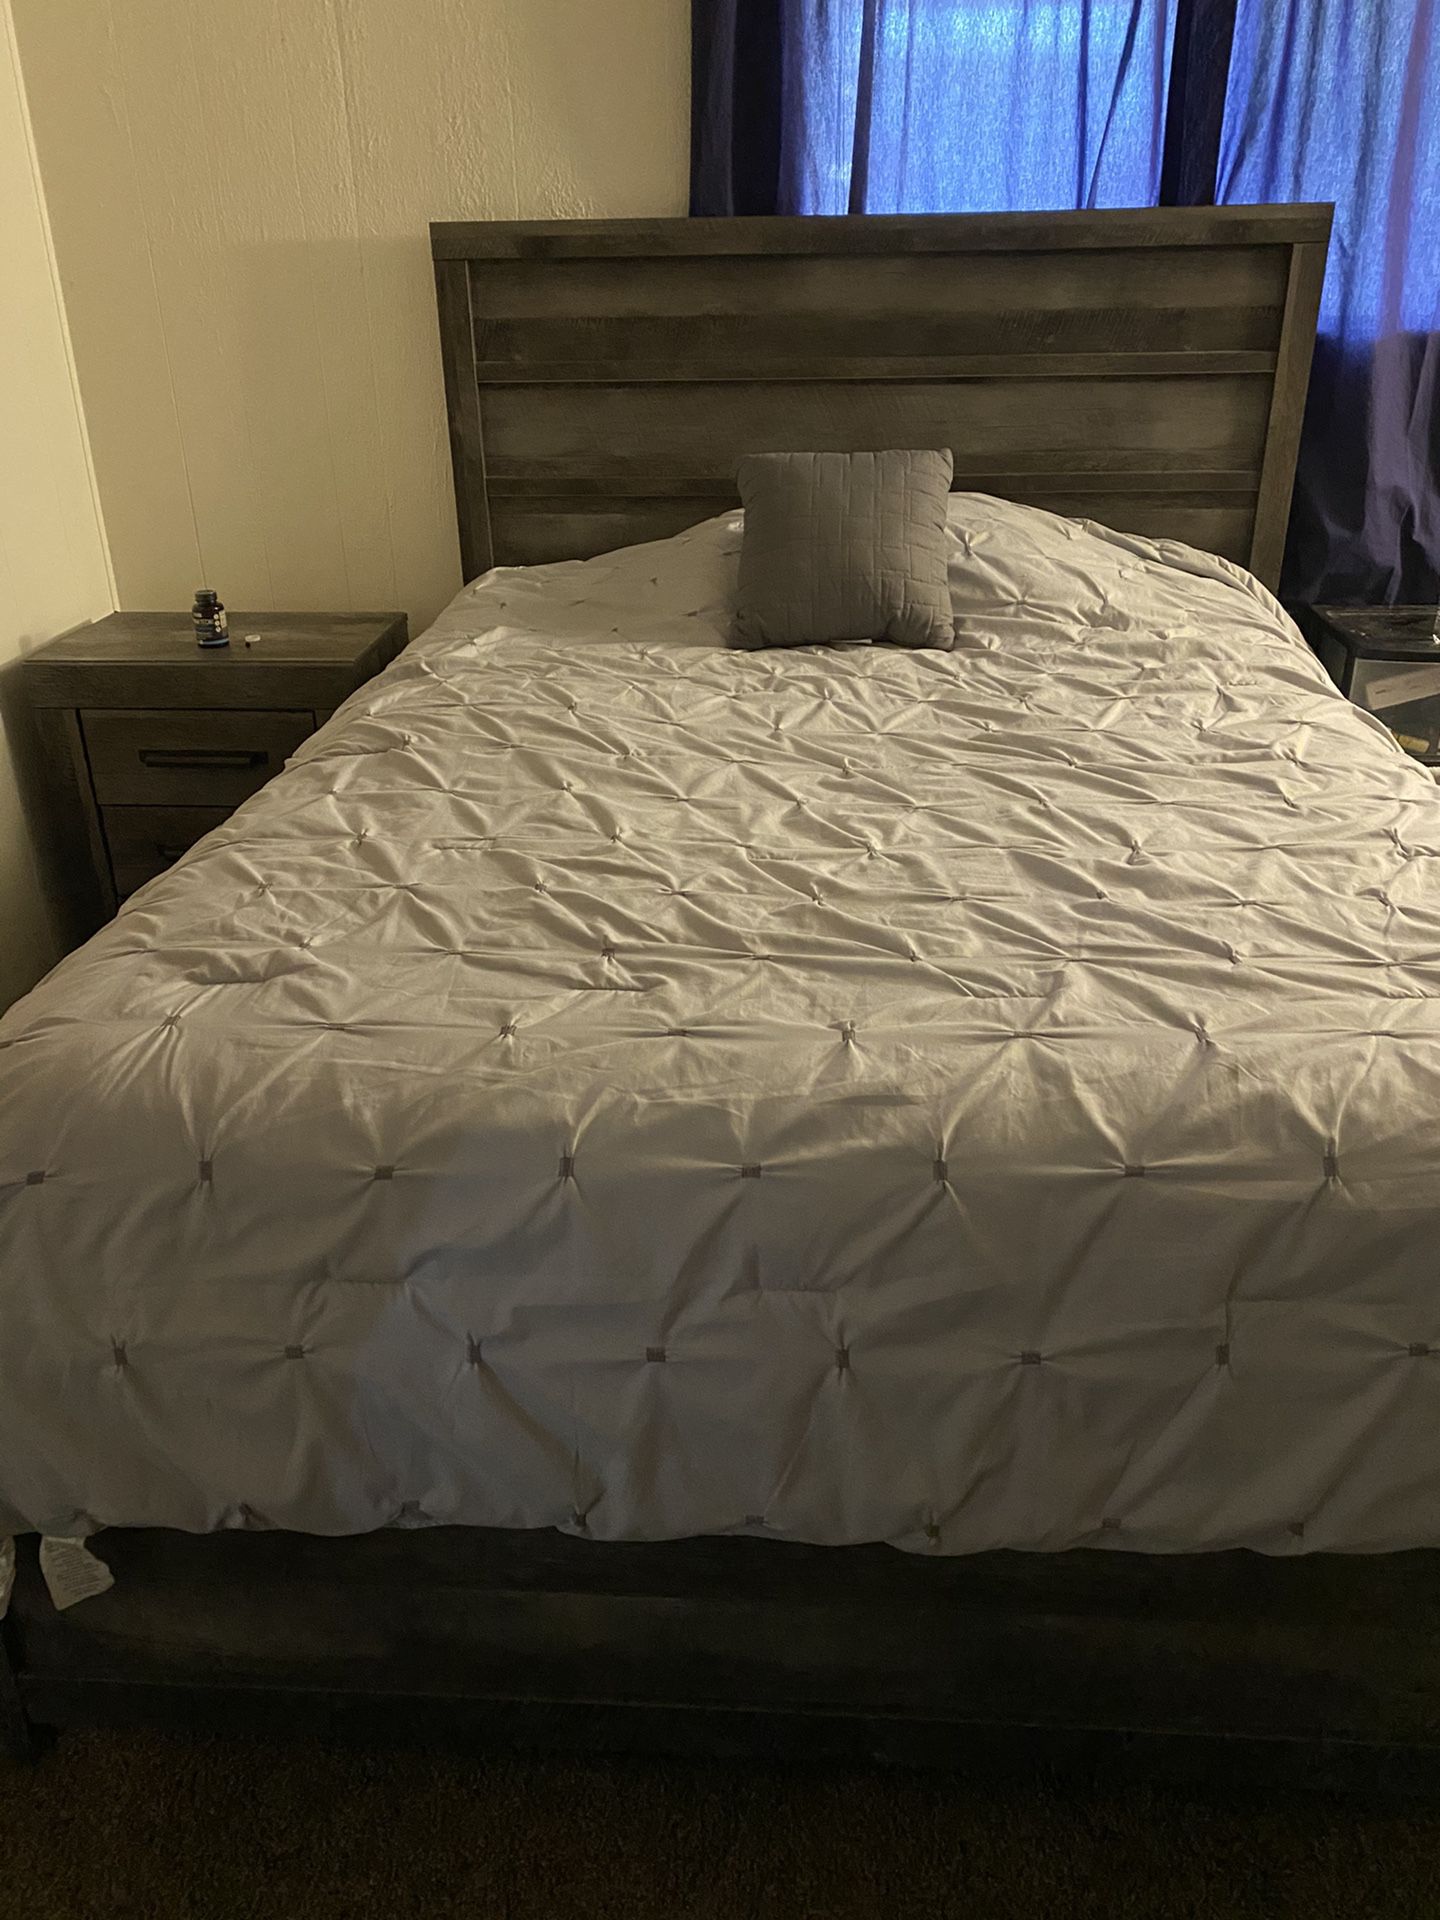 Queen size bedroom set $600